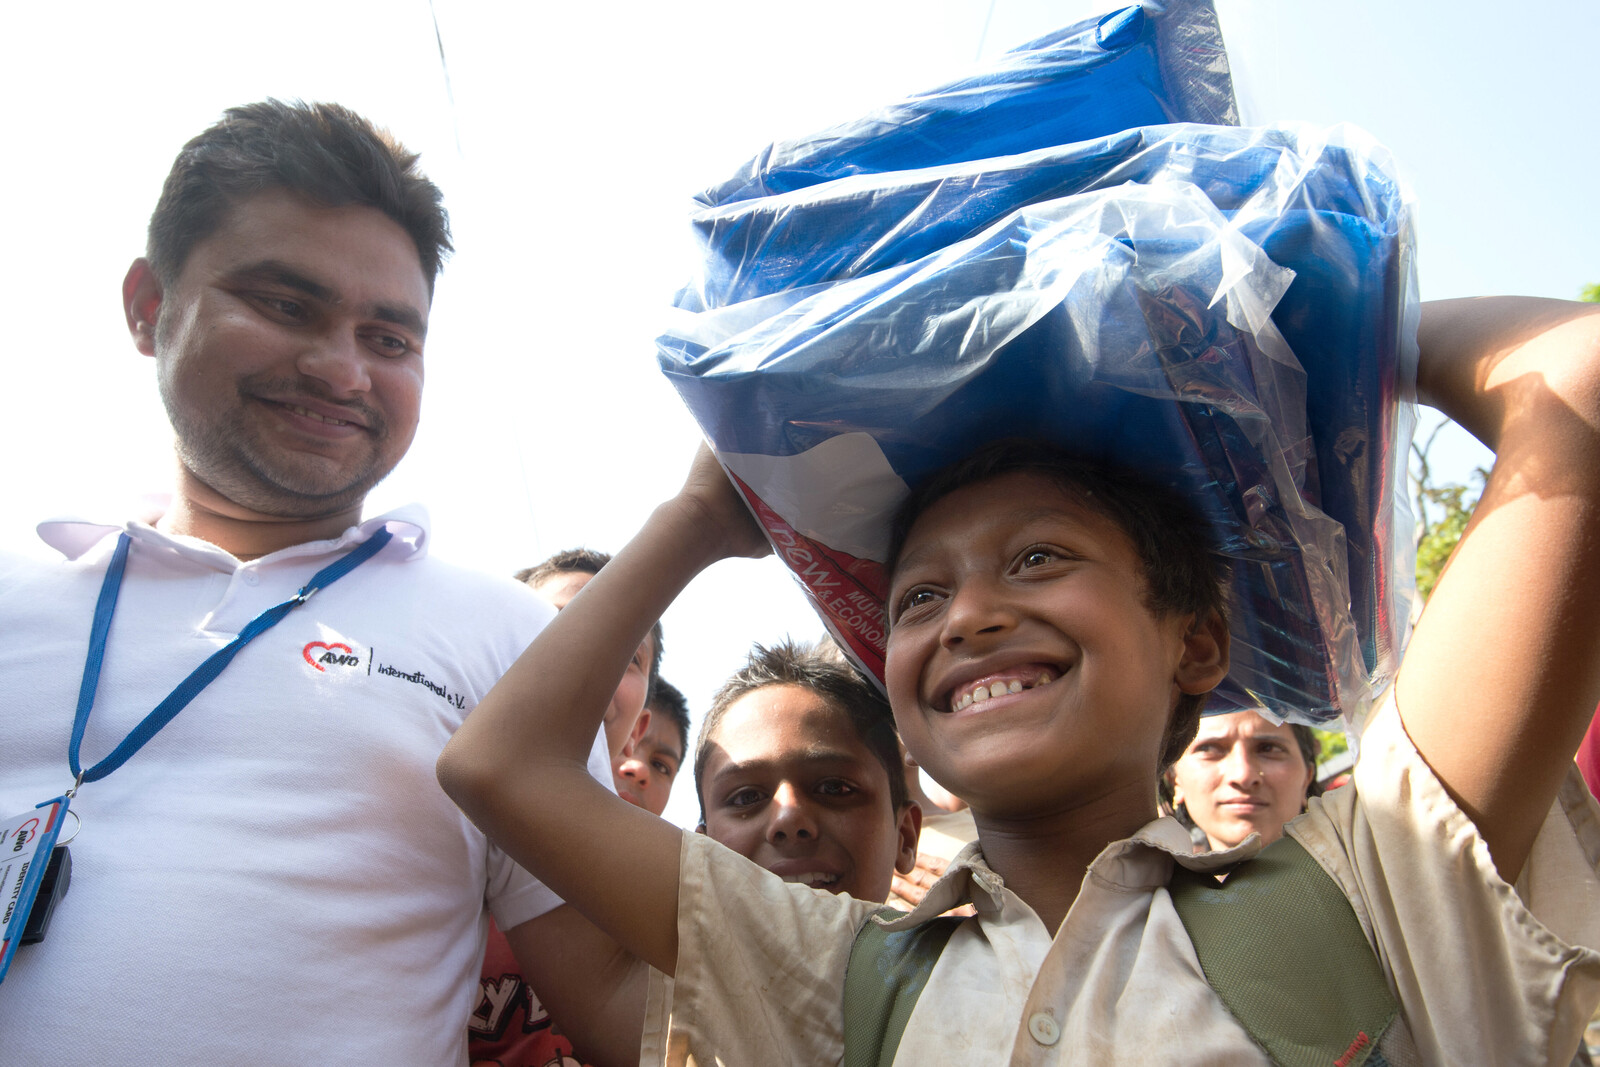 Junge in Nepal steht neben einem Humanitären Helfer